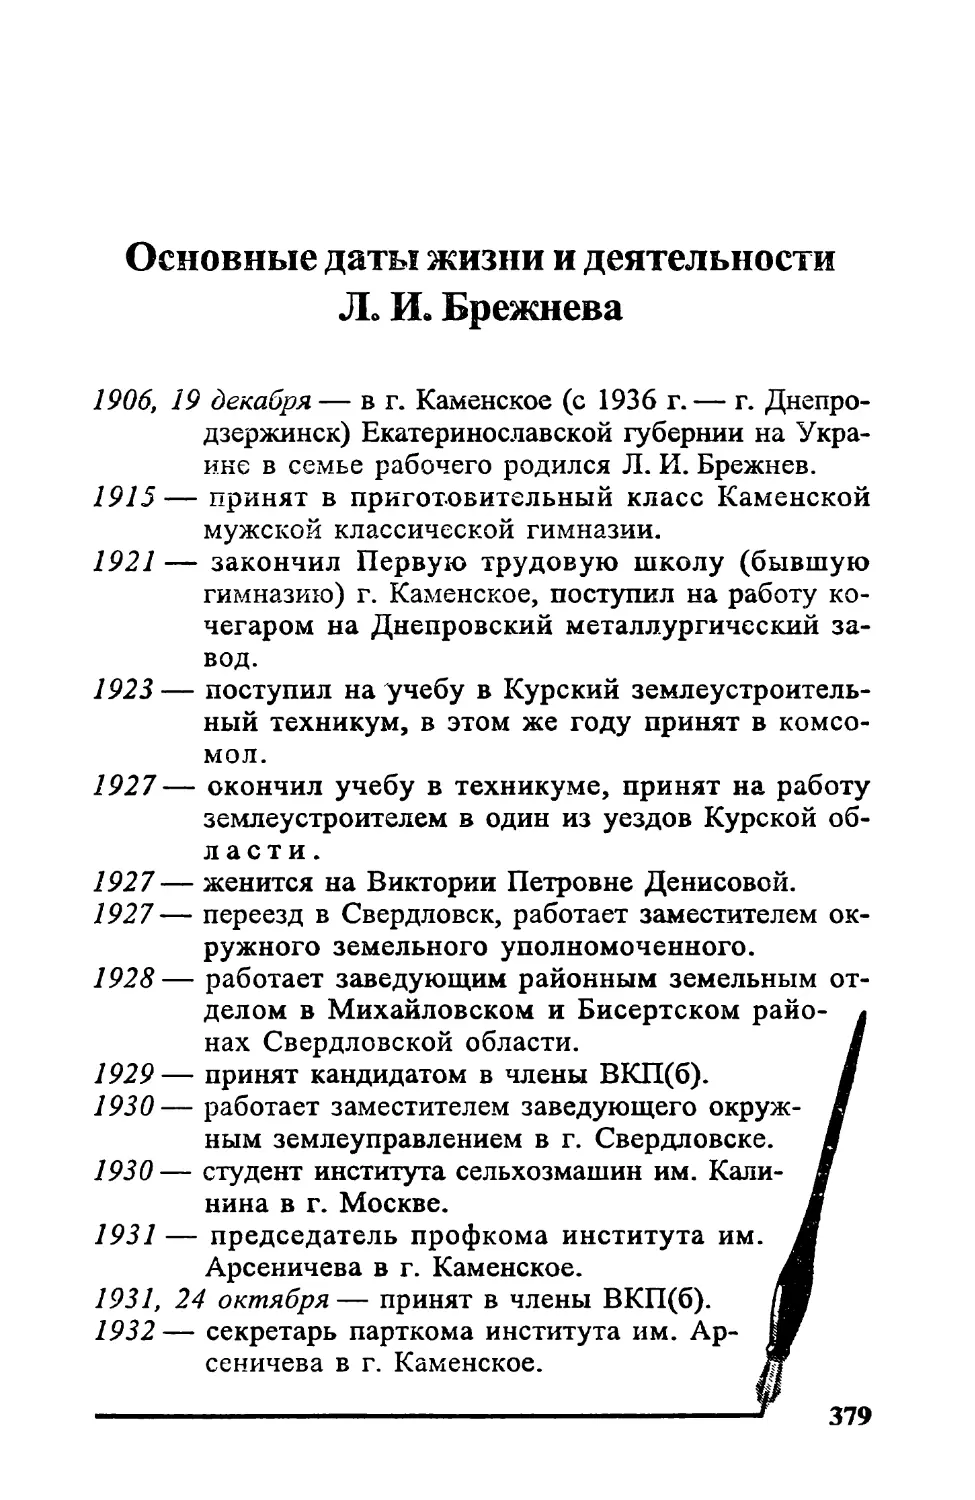 Основные даты жизни и деятельности Л. И. Брежнева